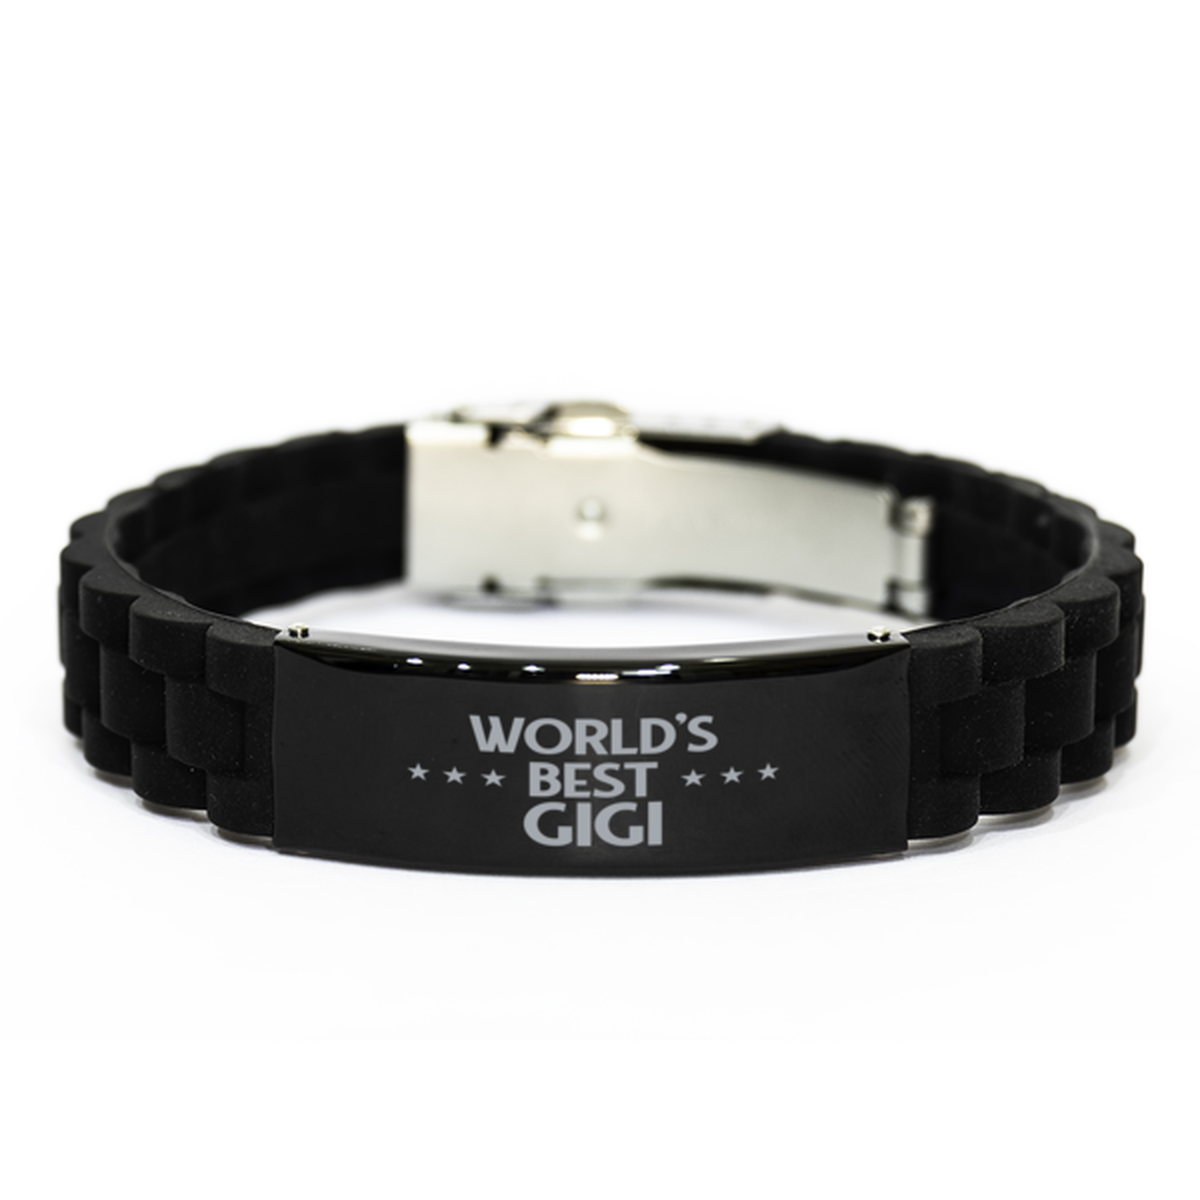 World's Best Gigi Gifts, Funny Black Engraved Bracelet For Gigi, Family Gifts For Women